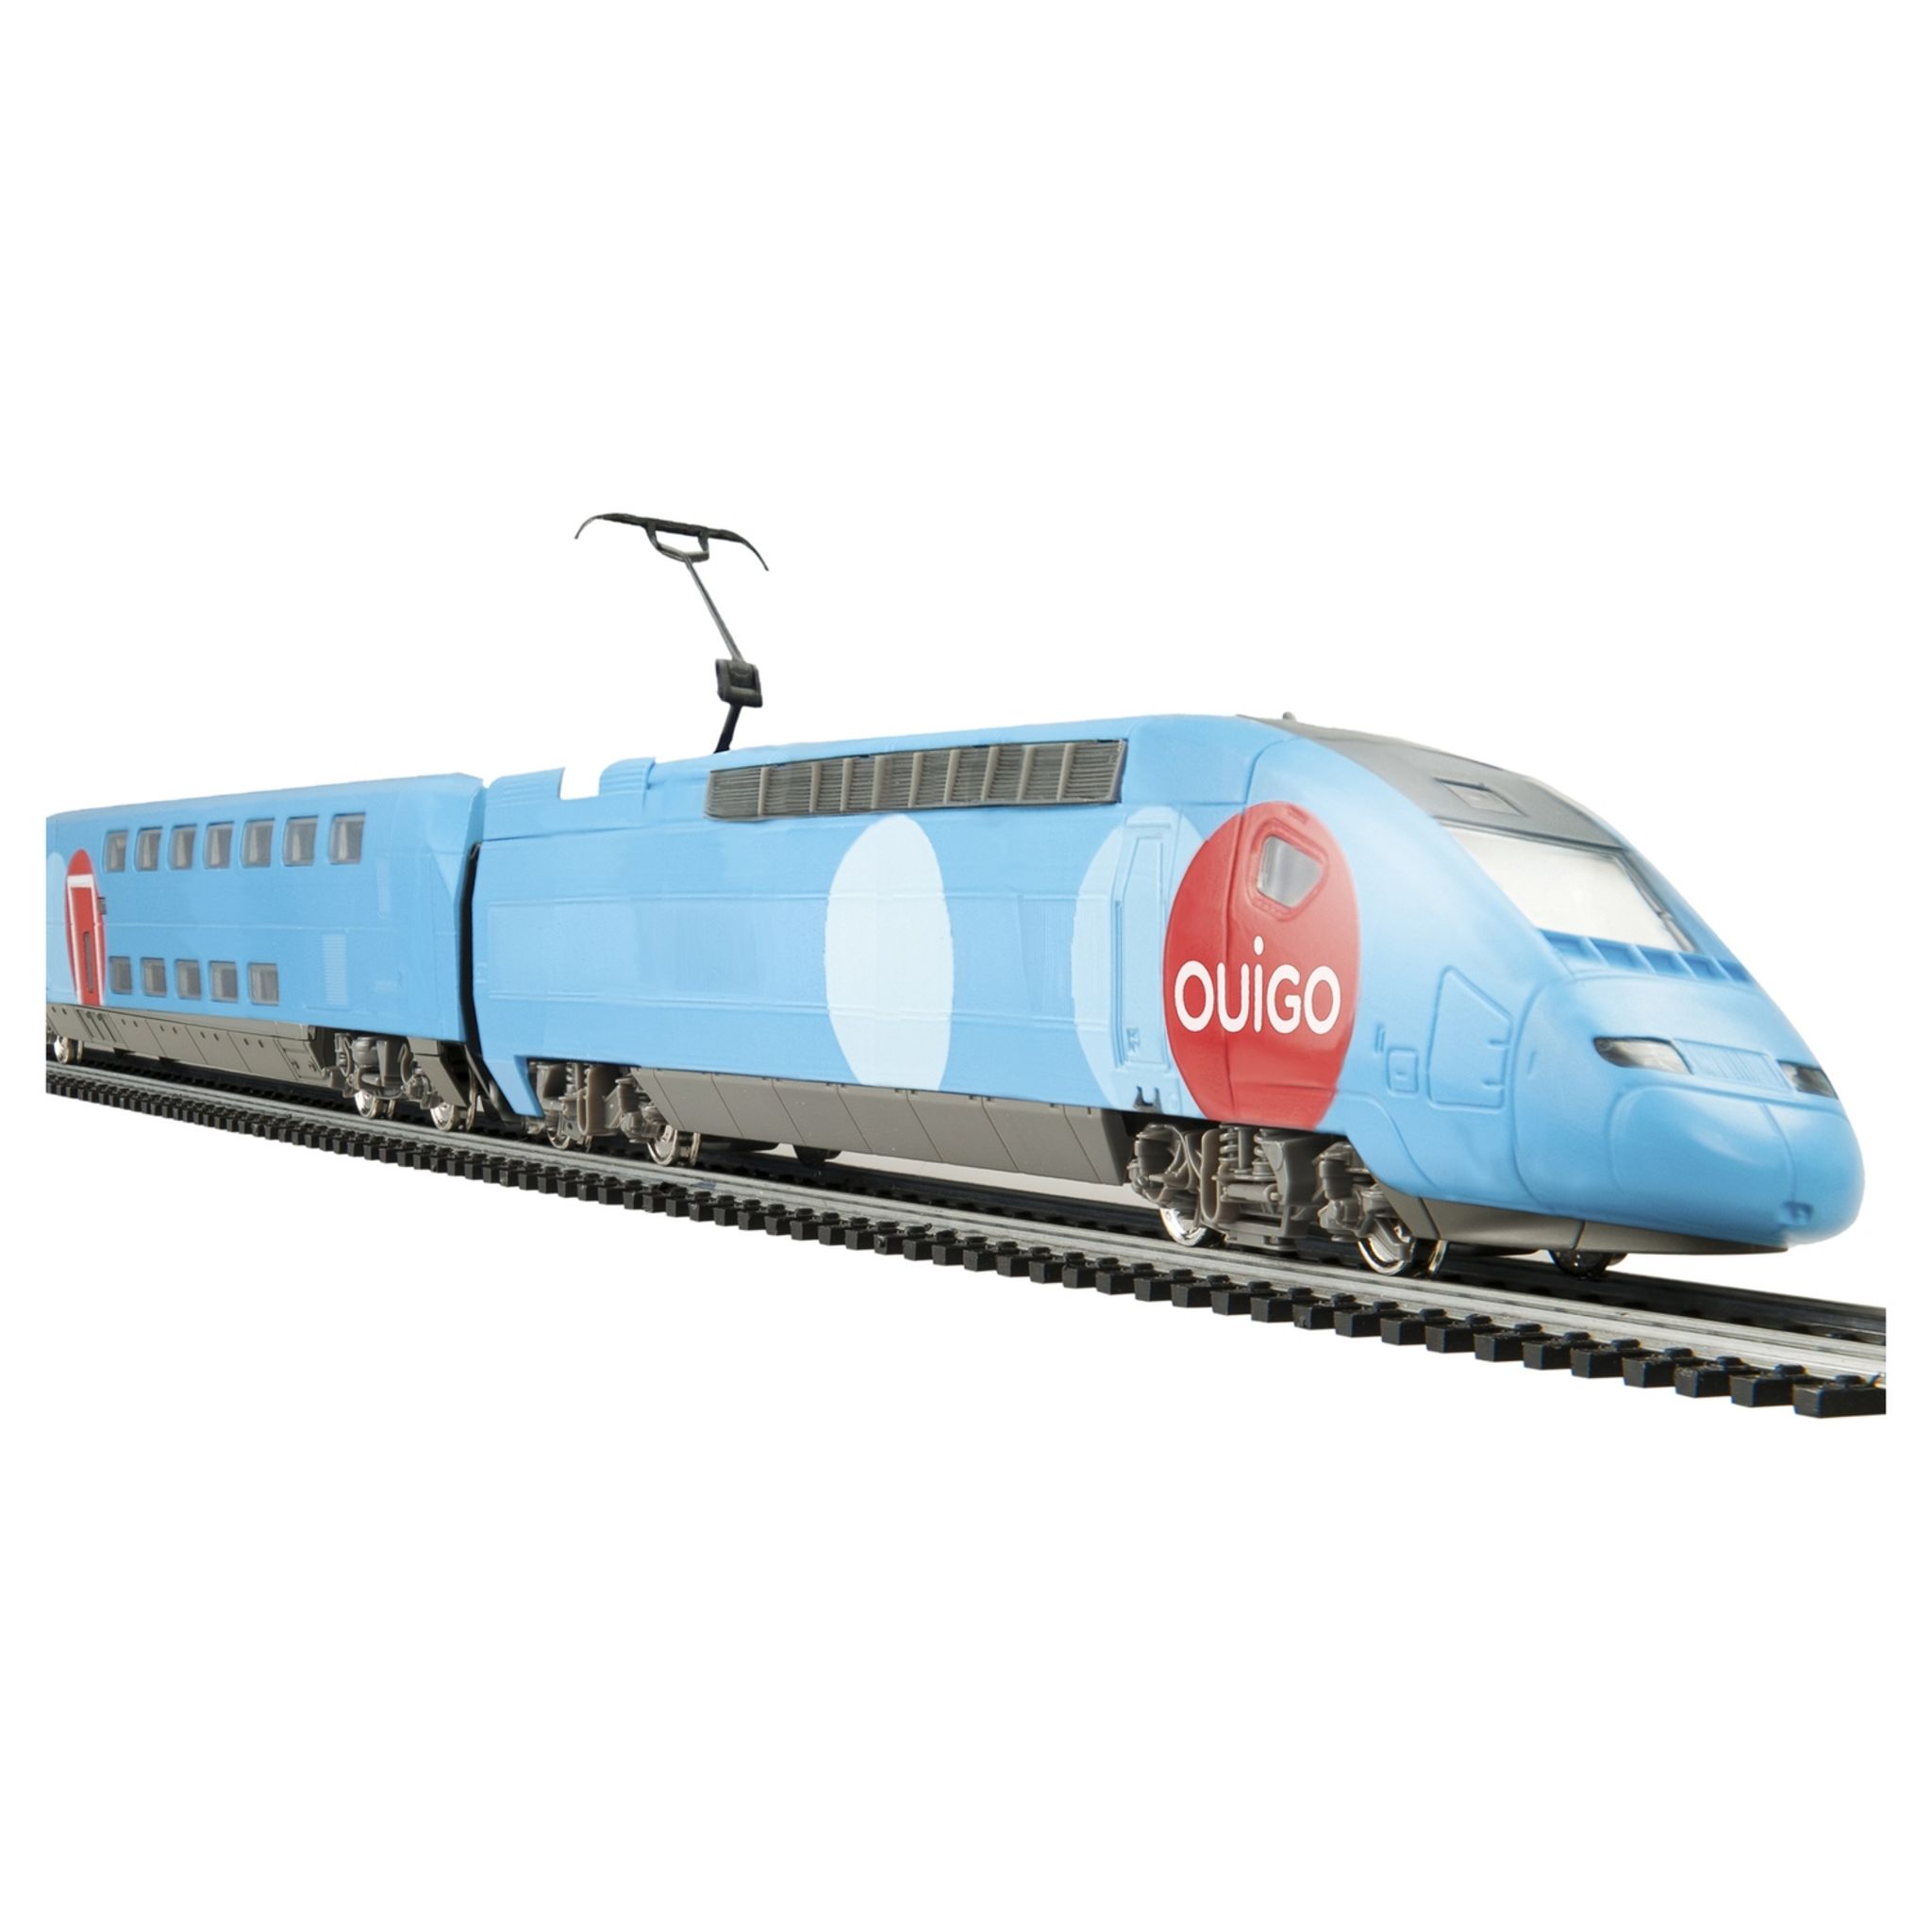 Coffret train électrique TGV Ouigo